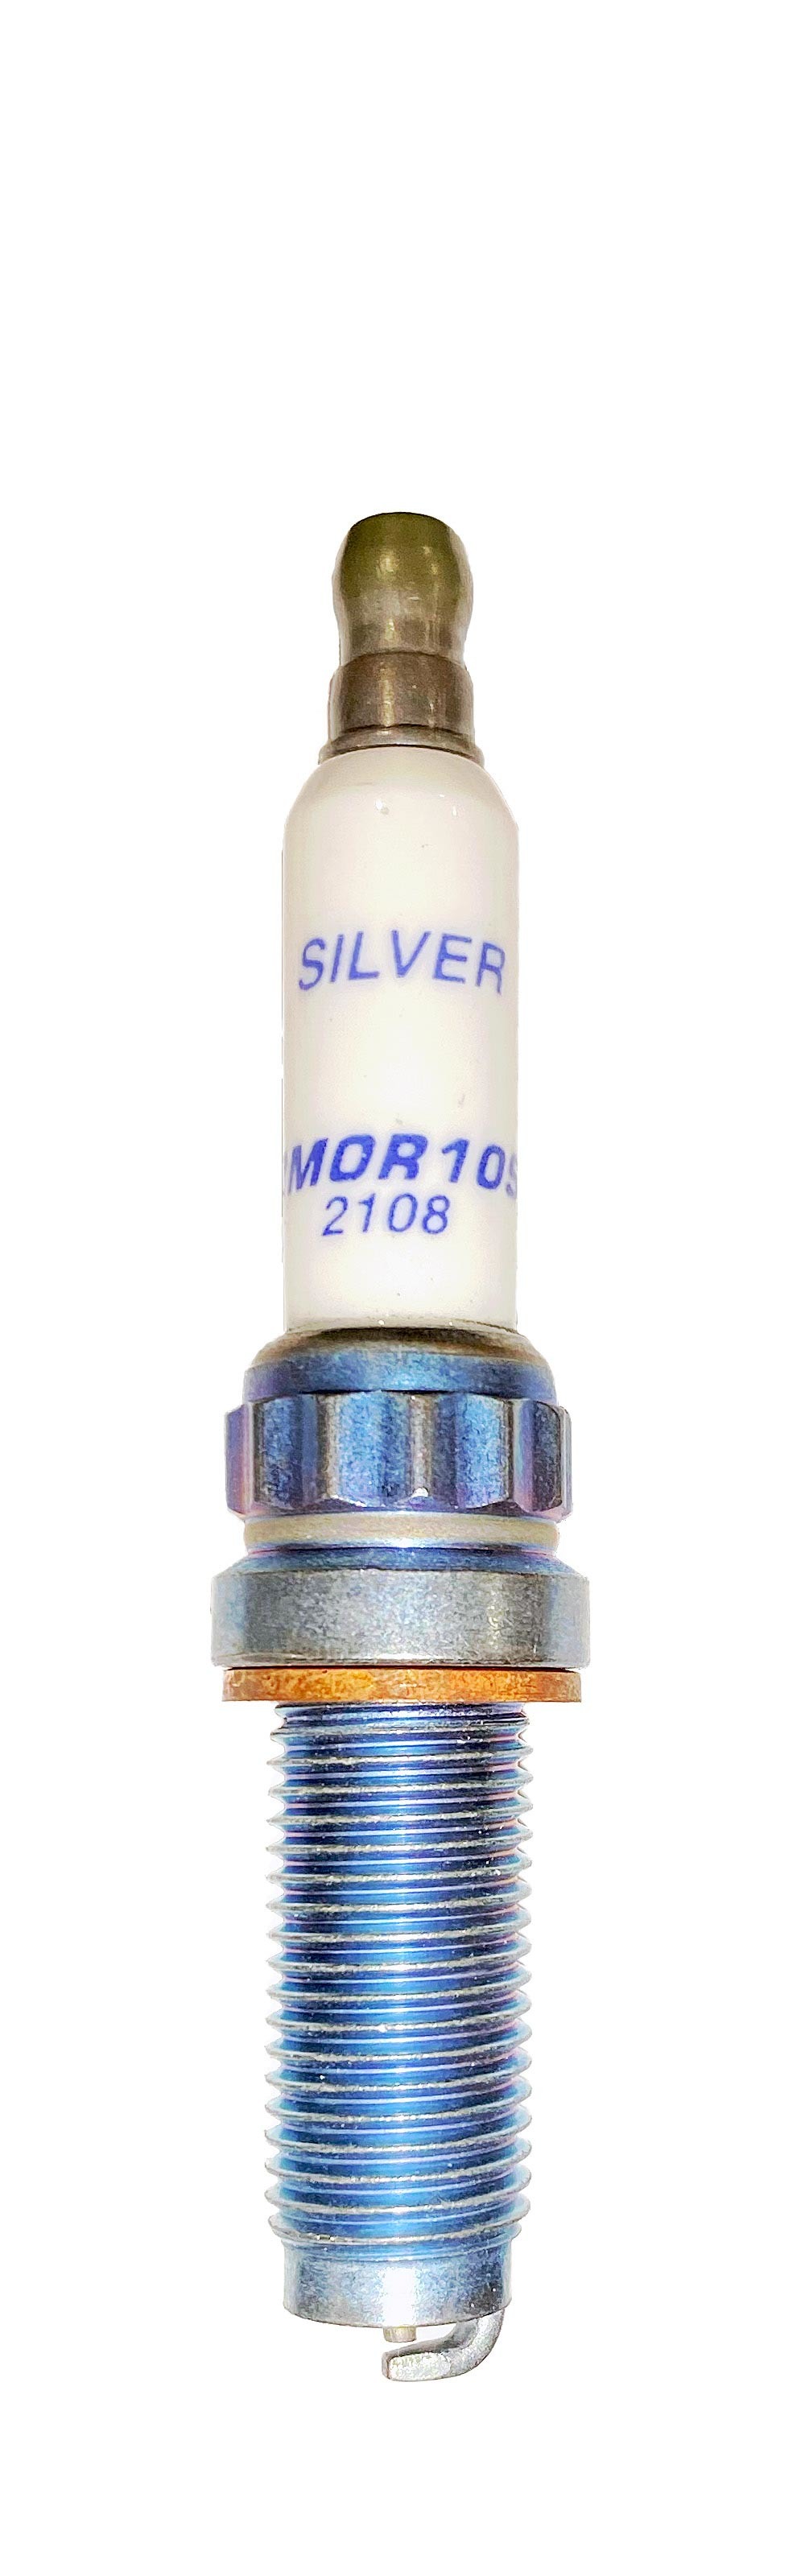 Brisk Racing Plugs 2MOR10S Spark Plug, Silver Racing, 12 mm Thread, 26.1 mm Reach, Heat Range 10, Gasket Seat, Resistor, Each